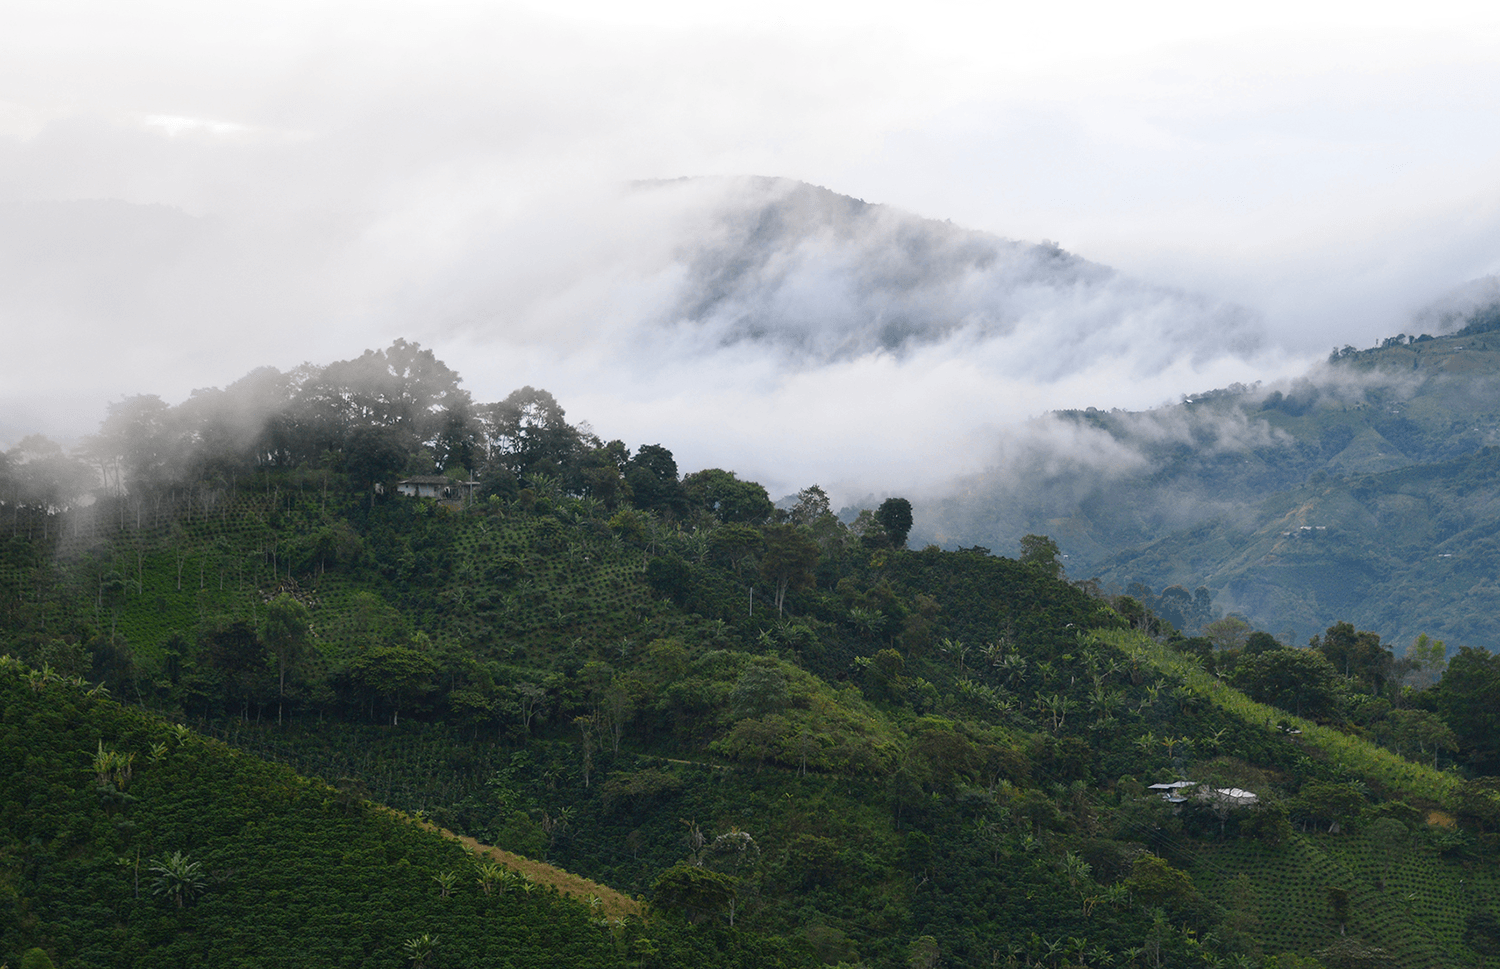 finca los nogales colombian coffee farm